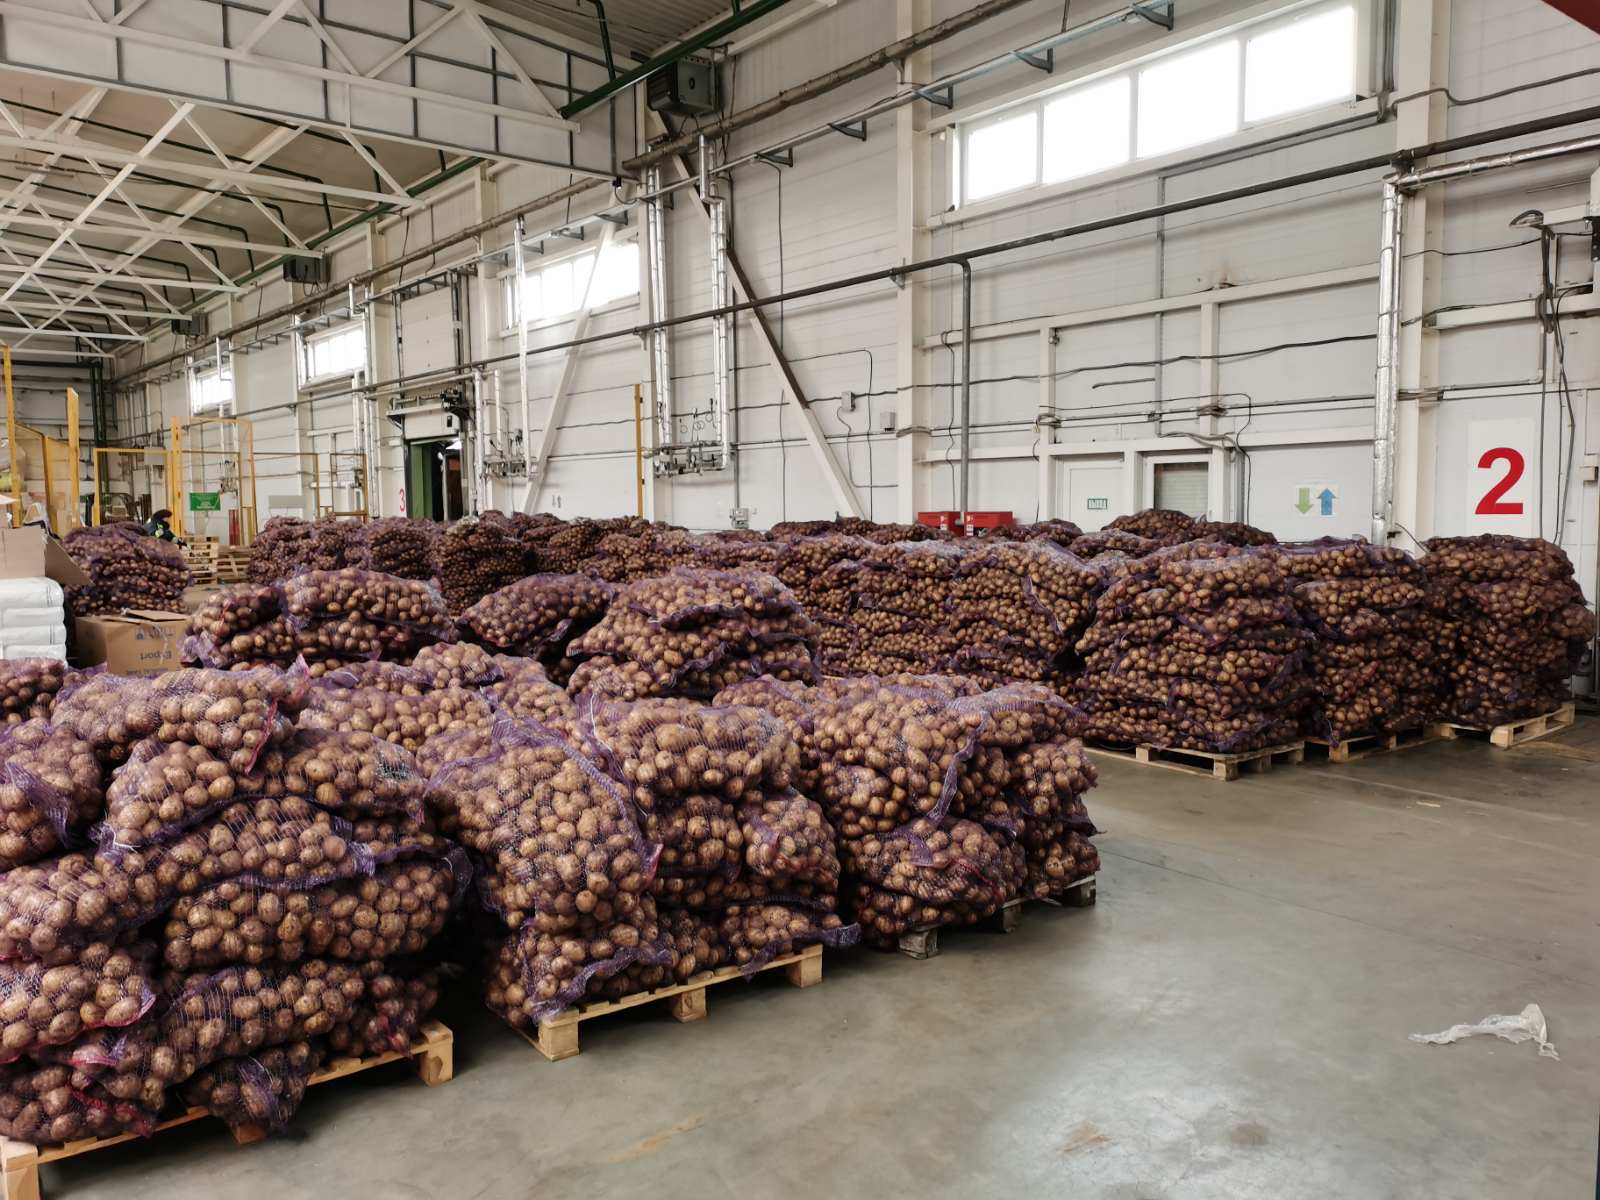 30 тонн картофеля пытались незаконно вывезти из Беларуси